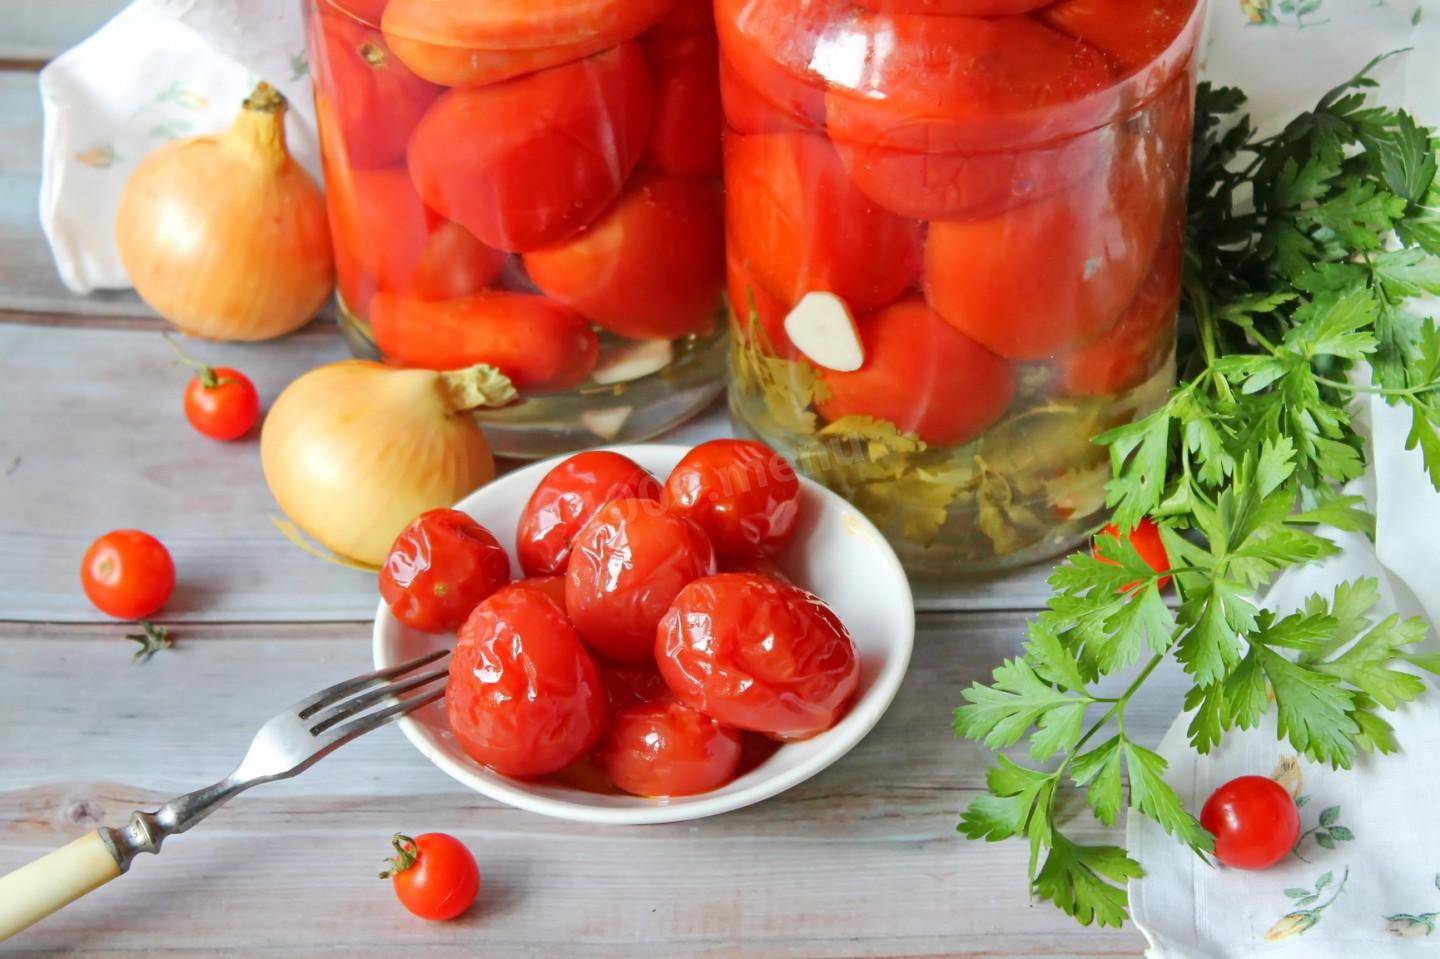 Рецепты приготовления заготовок из желтых помидор на зиму: салаты, лечо, консервирование